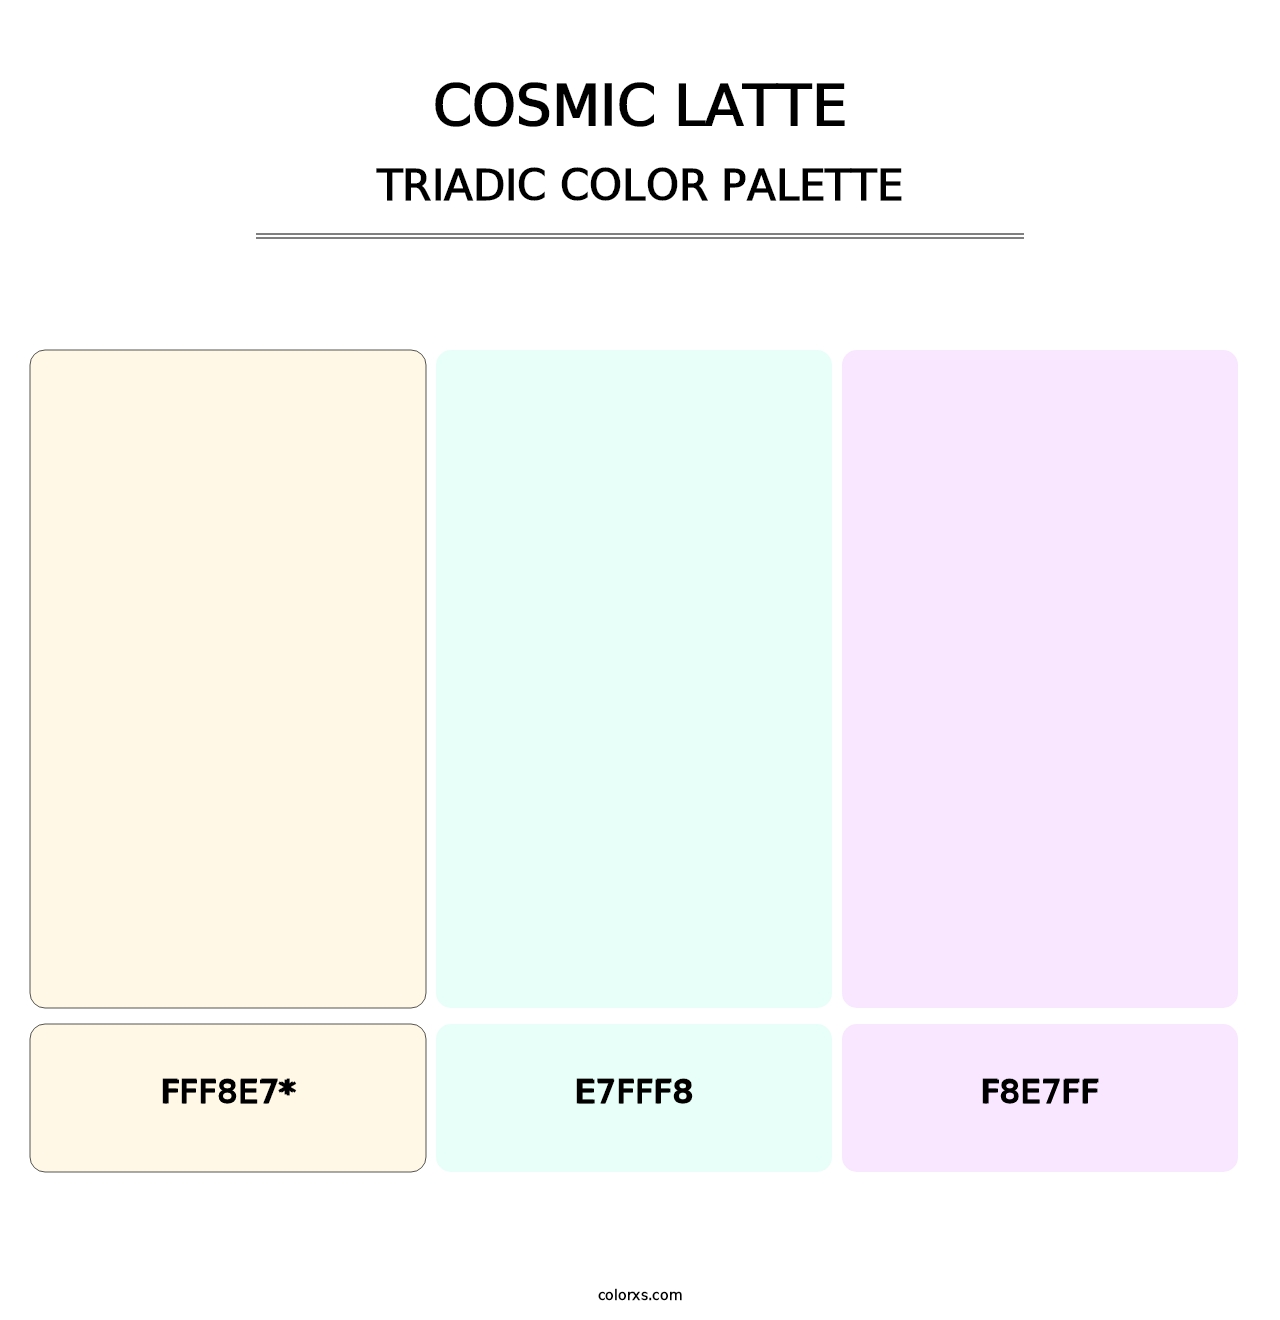 Cosmic Latte - Triadic Color Palette